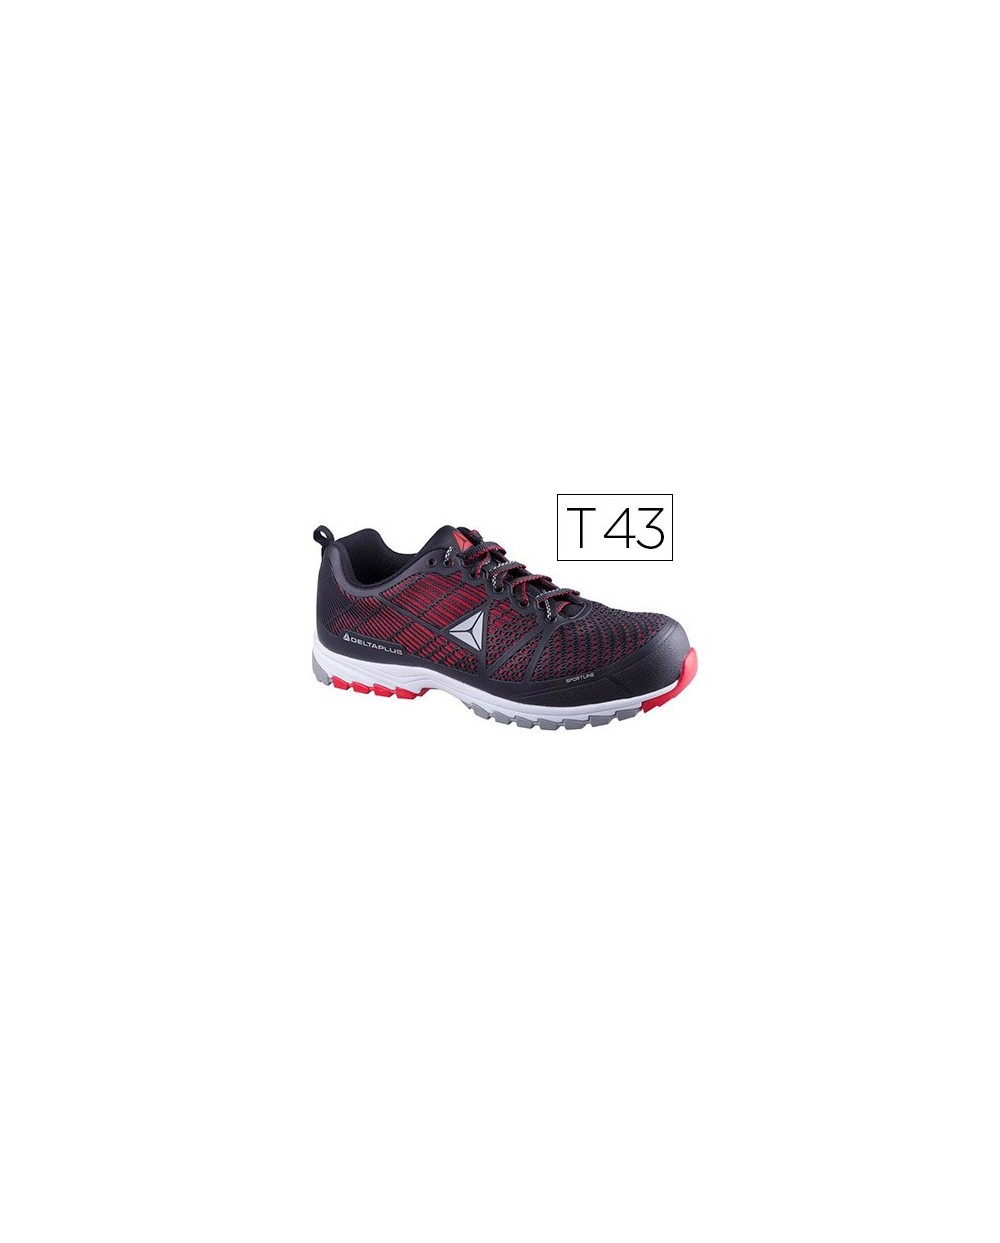 Zapatos de seguridad deltaplus de poliuretano y malla aireada s1p negro y rojo talla 43